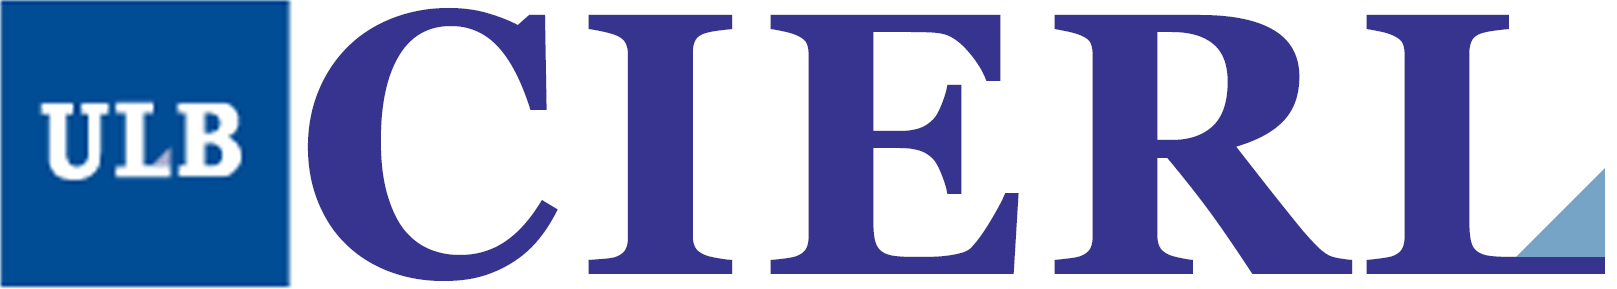 logo-Centre de recherche PHISOC - CIERL